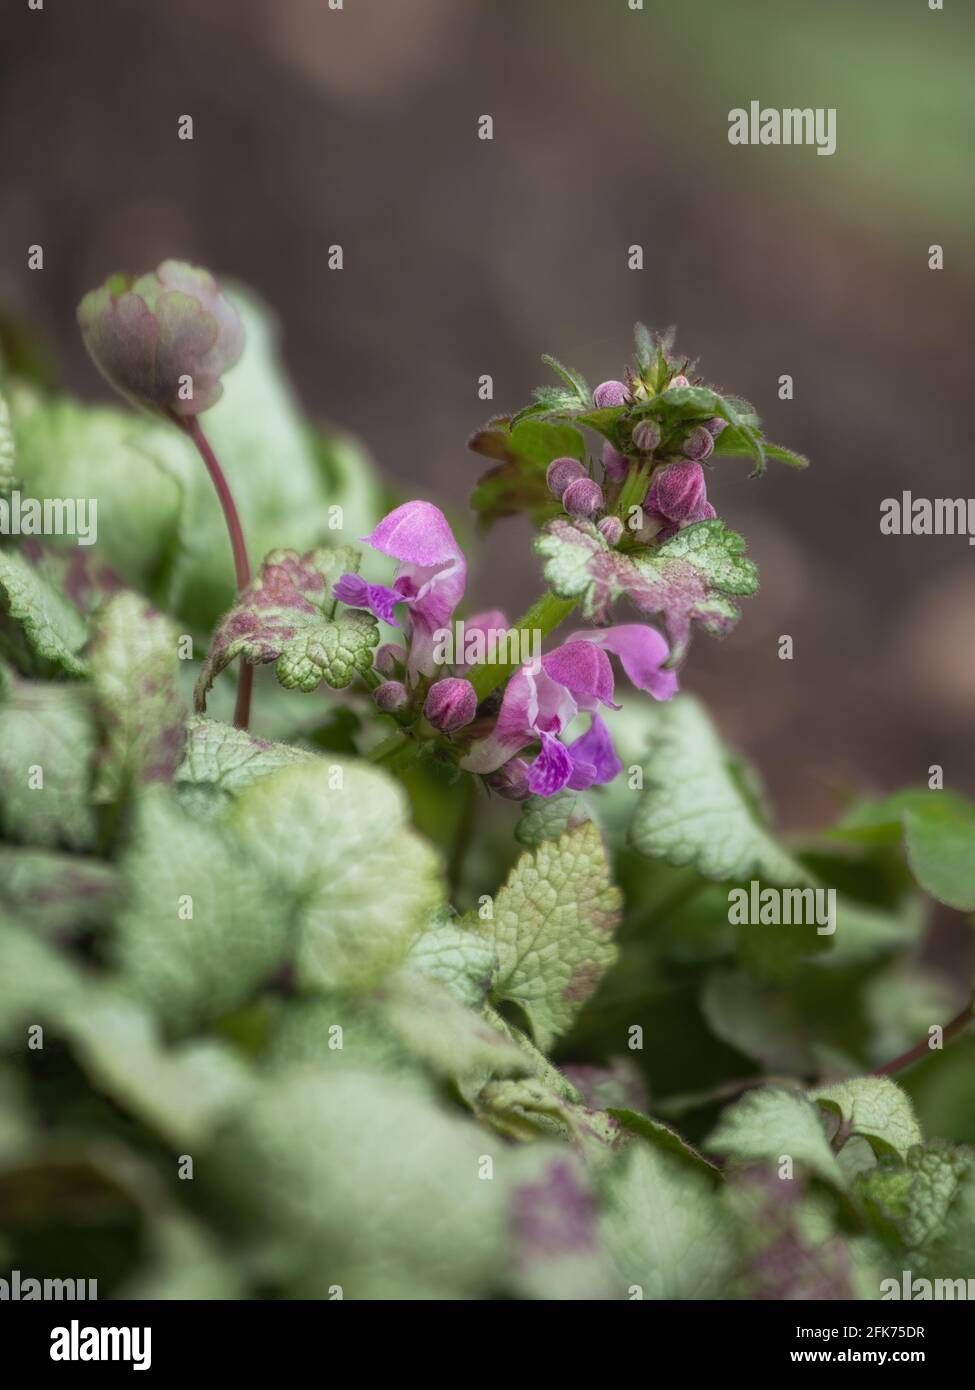 Closeup of the purple flowers of Lamium maculatum 'White Nancy' Stock Photo